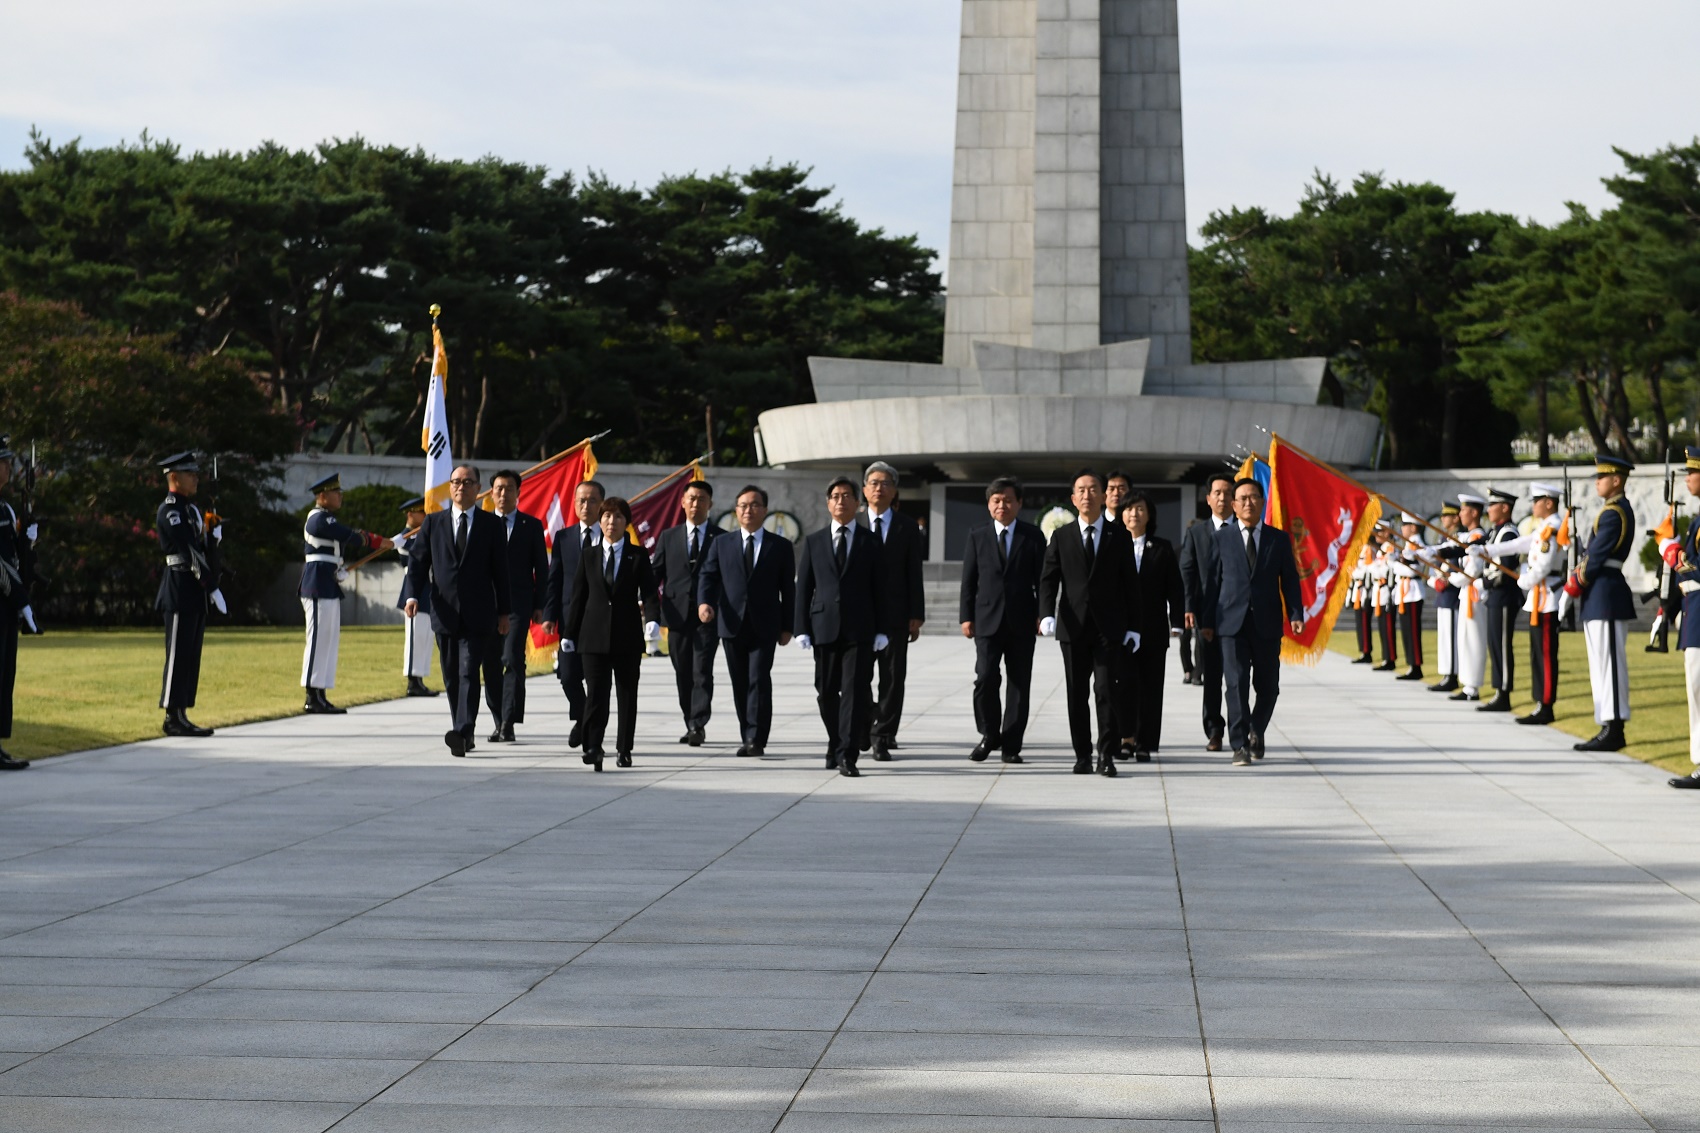 김명수 대법원장 퇴임 참배 (23.09.22.) 첨부 이미지